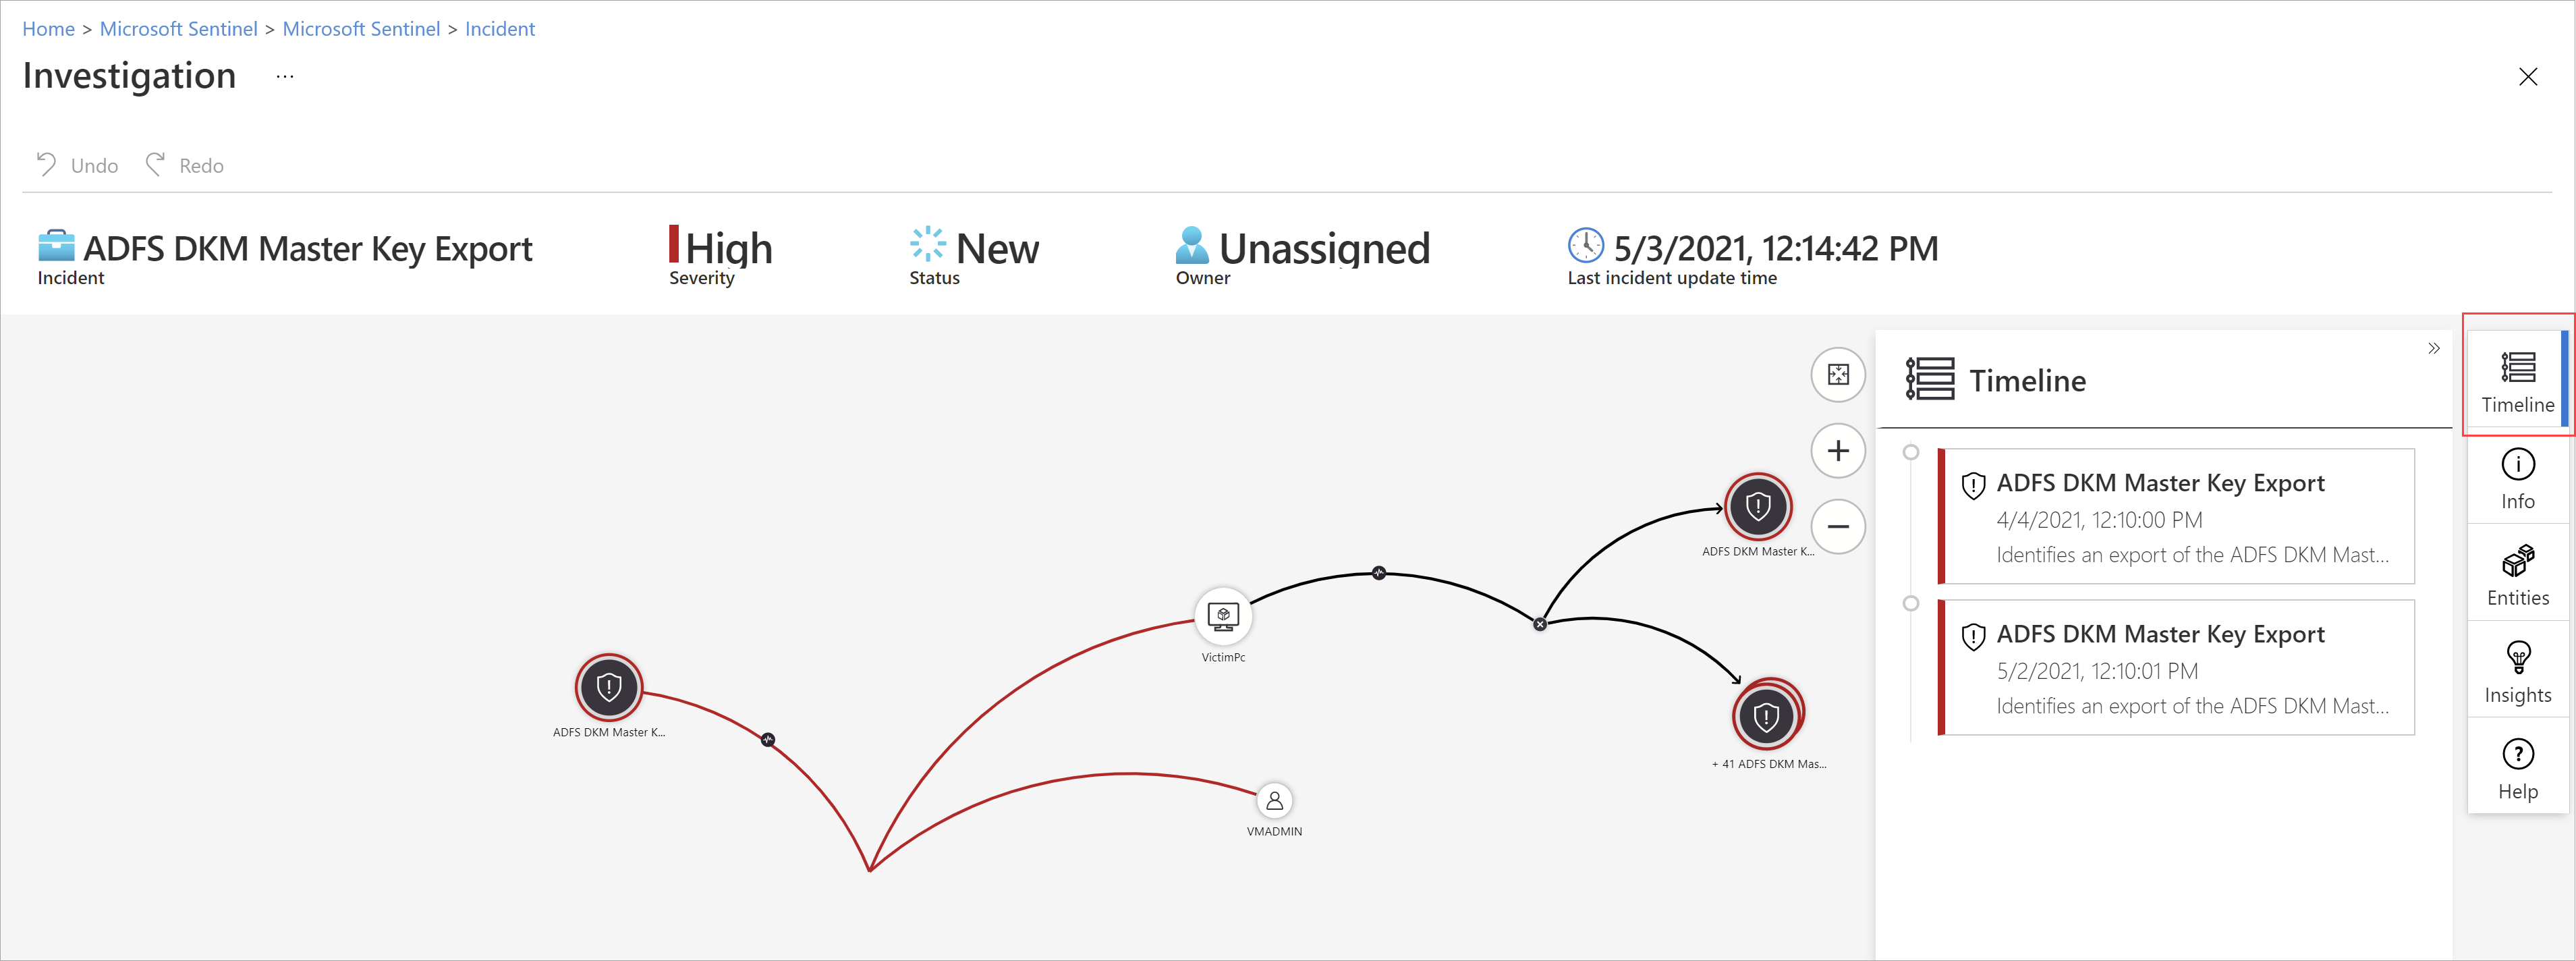 Cuplikan layar investigasi insiden yang menunjukkan entitas dan entitas yang terhubung dalam grafik interaktif.